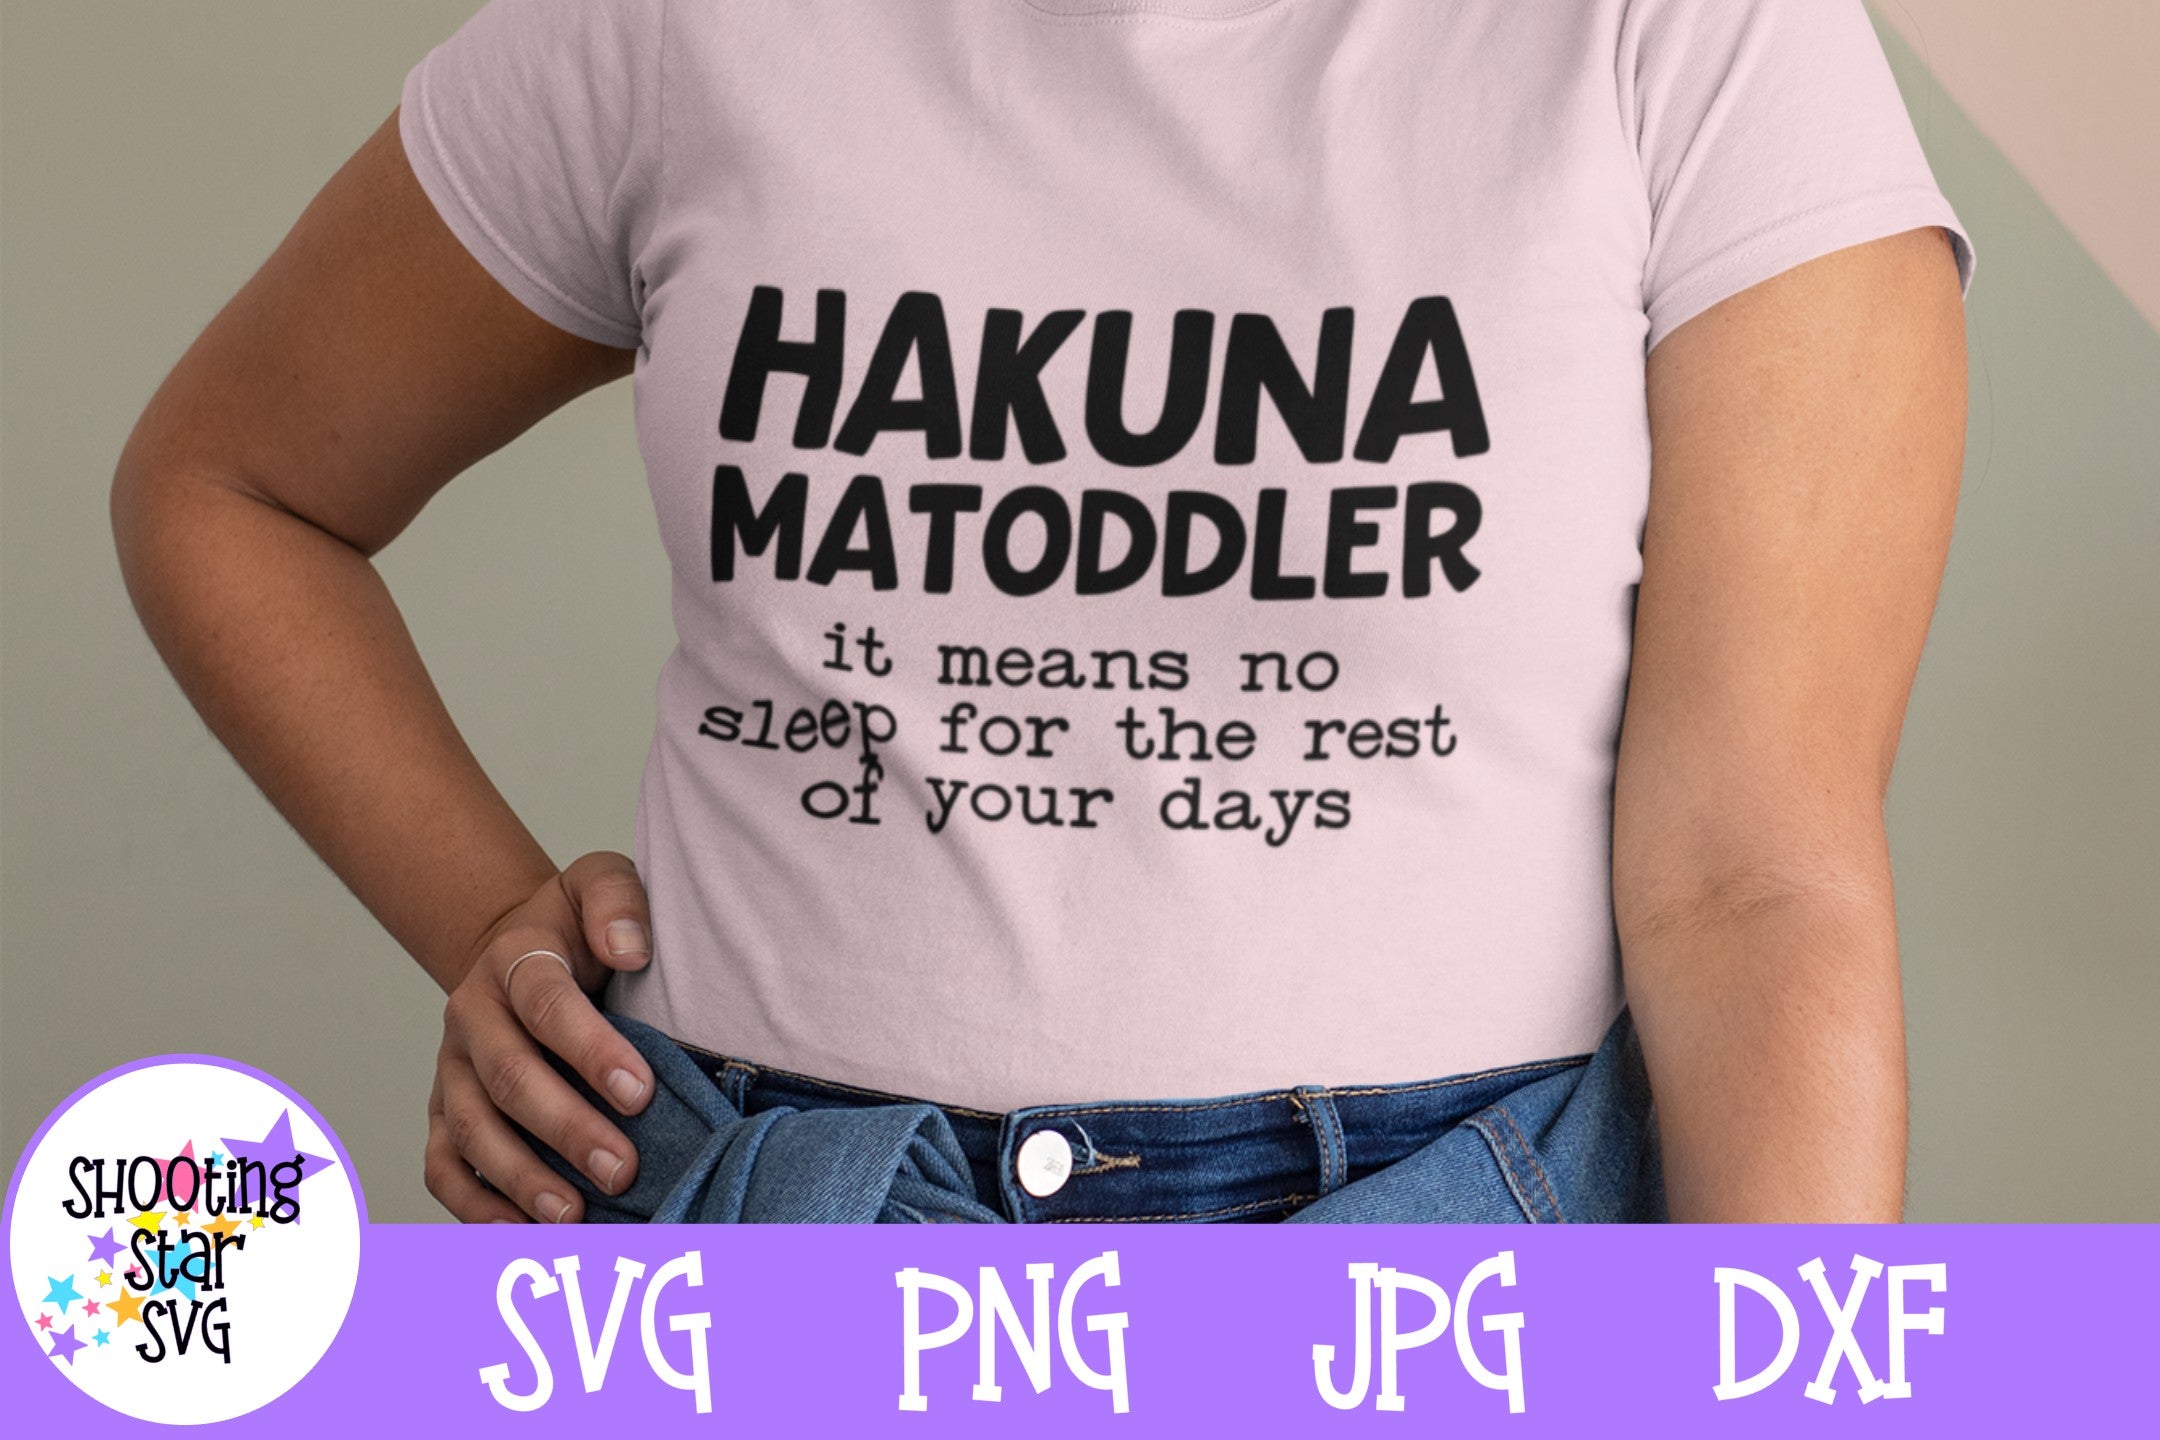 Funny Mom Shirt SVG Bundle - Funny Mom Quote SVG Bundle